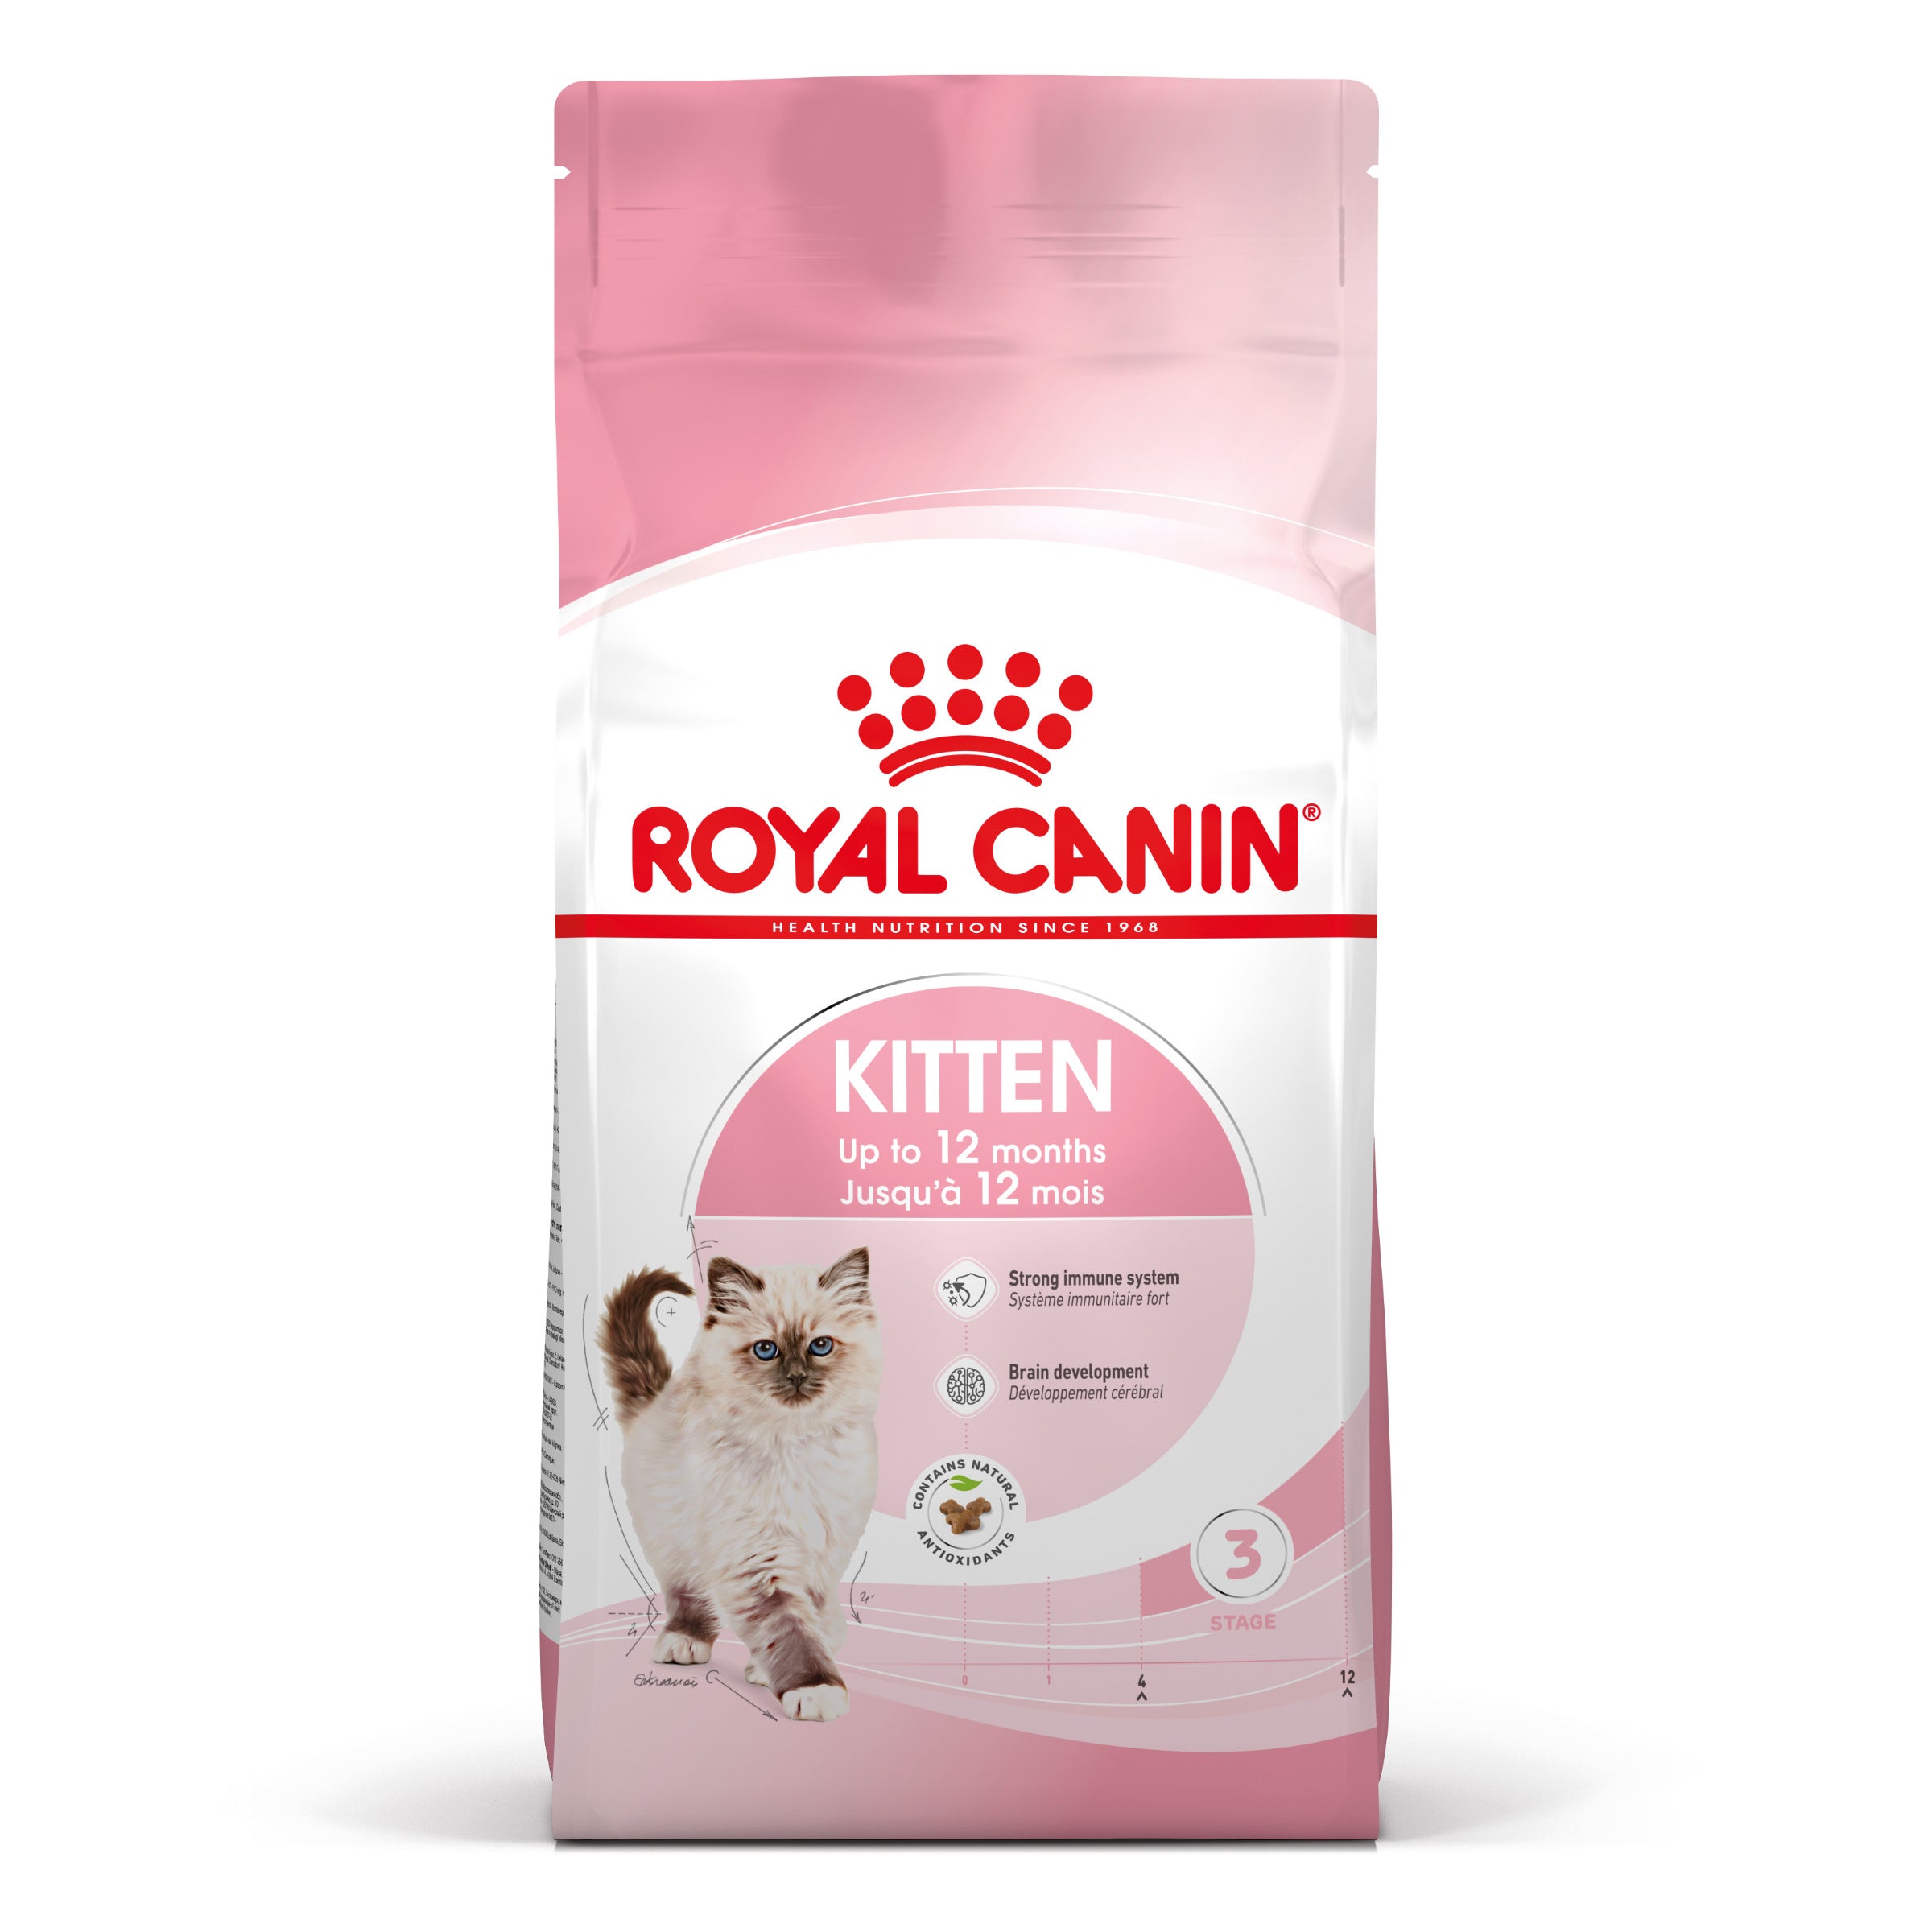 Billede af Royal canin - Royal Canin Kitten Tørfoder til killing 4kg - Cat Food